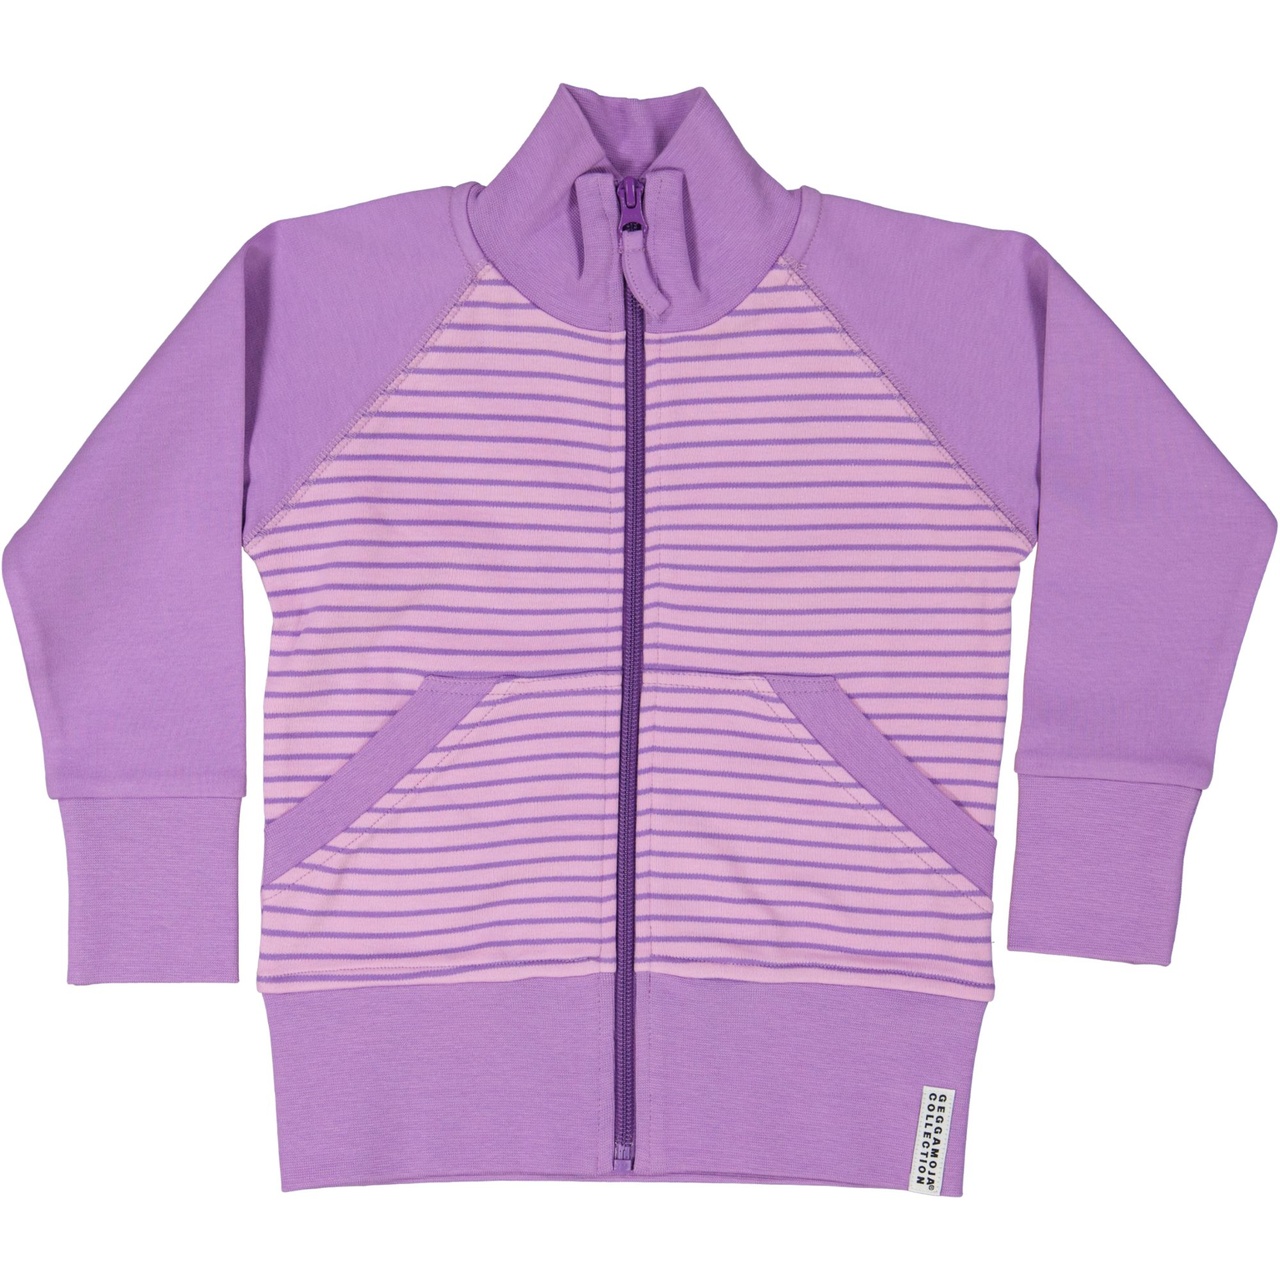 Zip sweater L.purple/purple  74/80